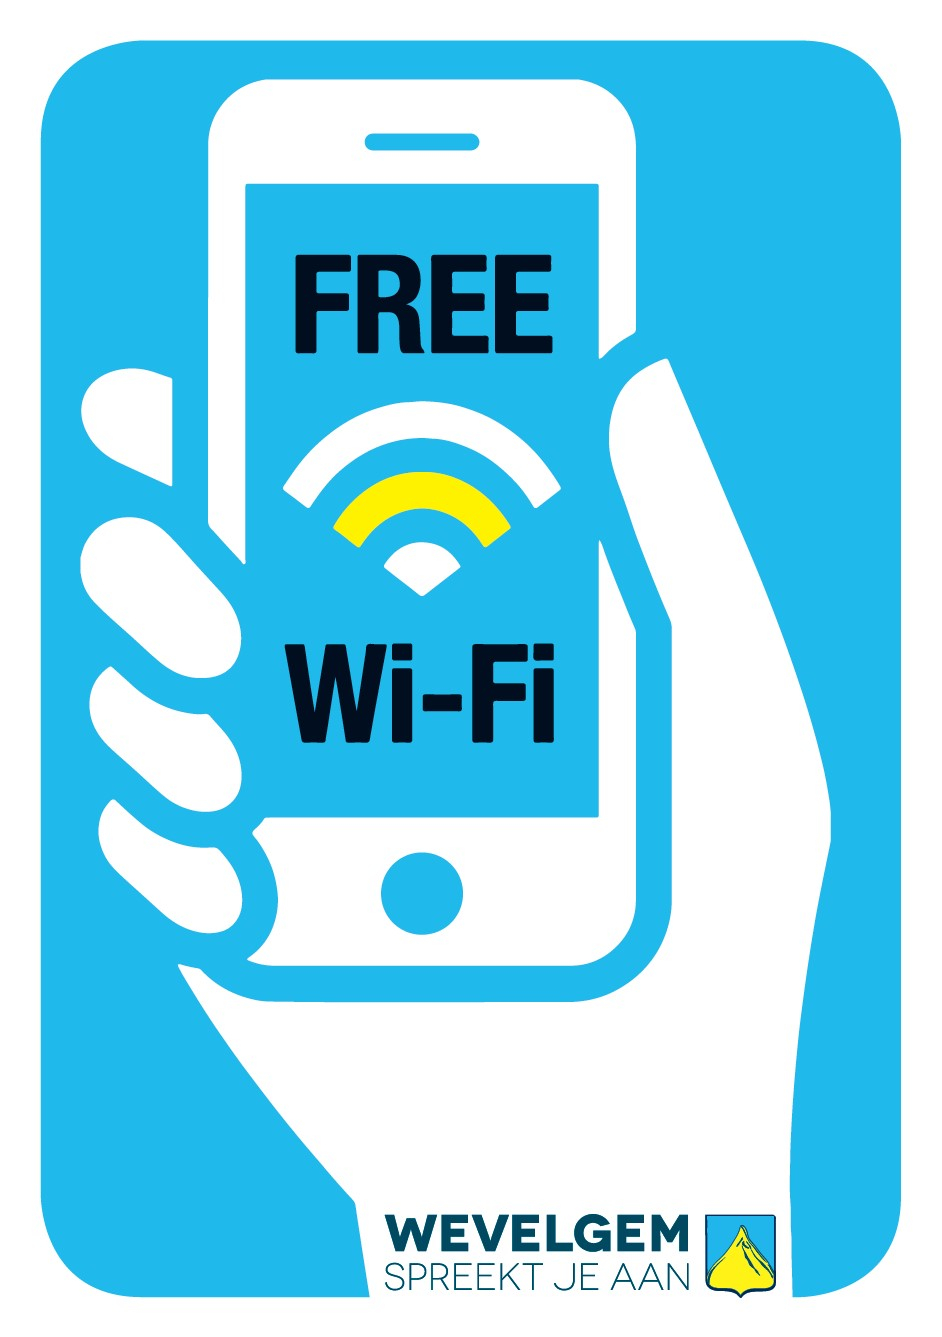 free wifi borden met witte hand die gsm vasthoudt met deze tekst